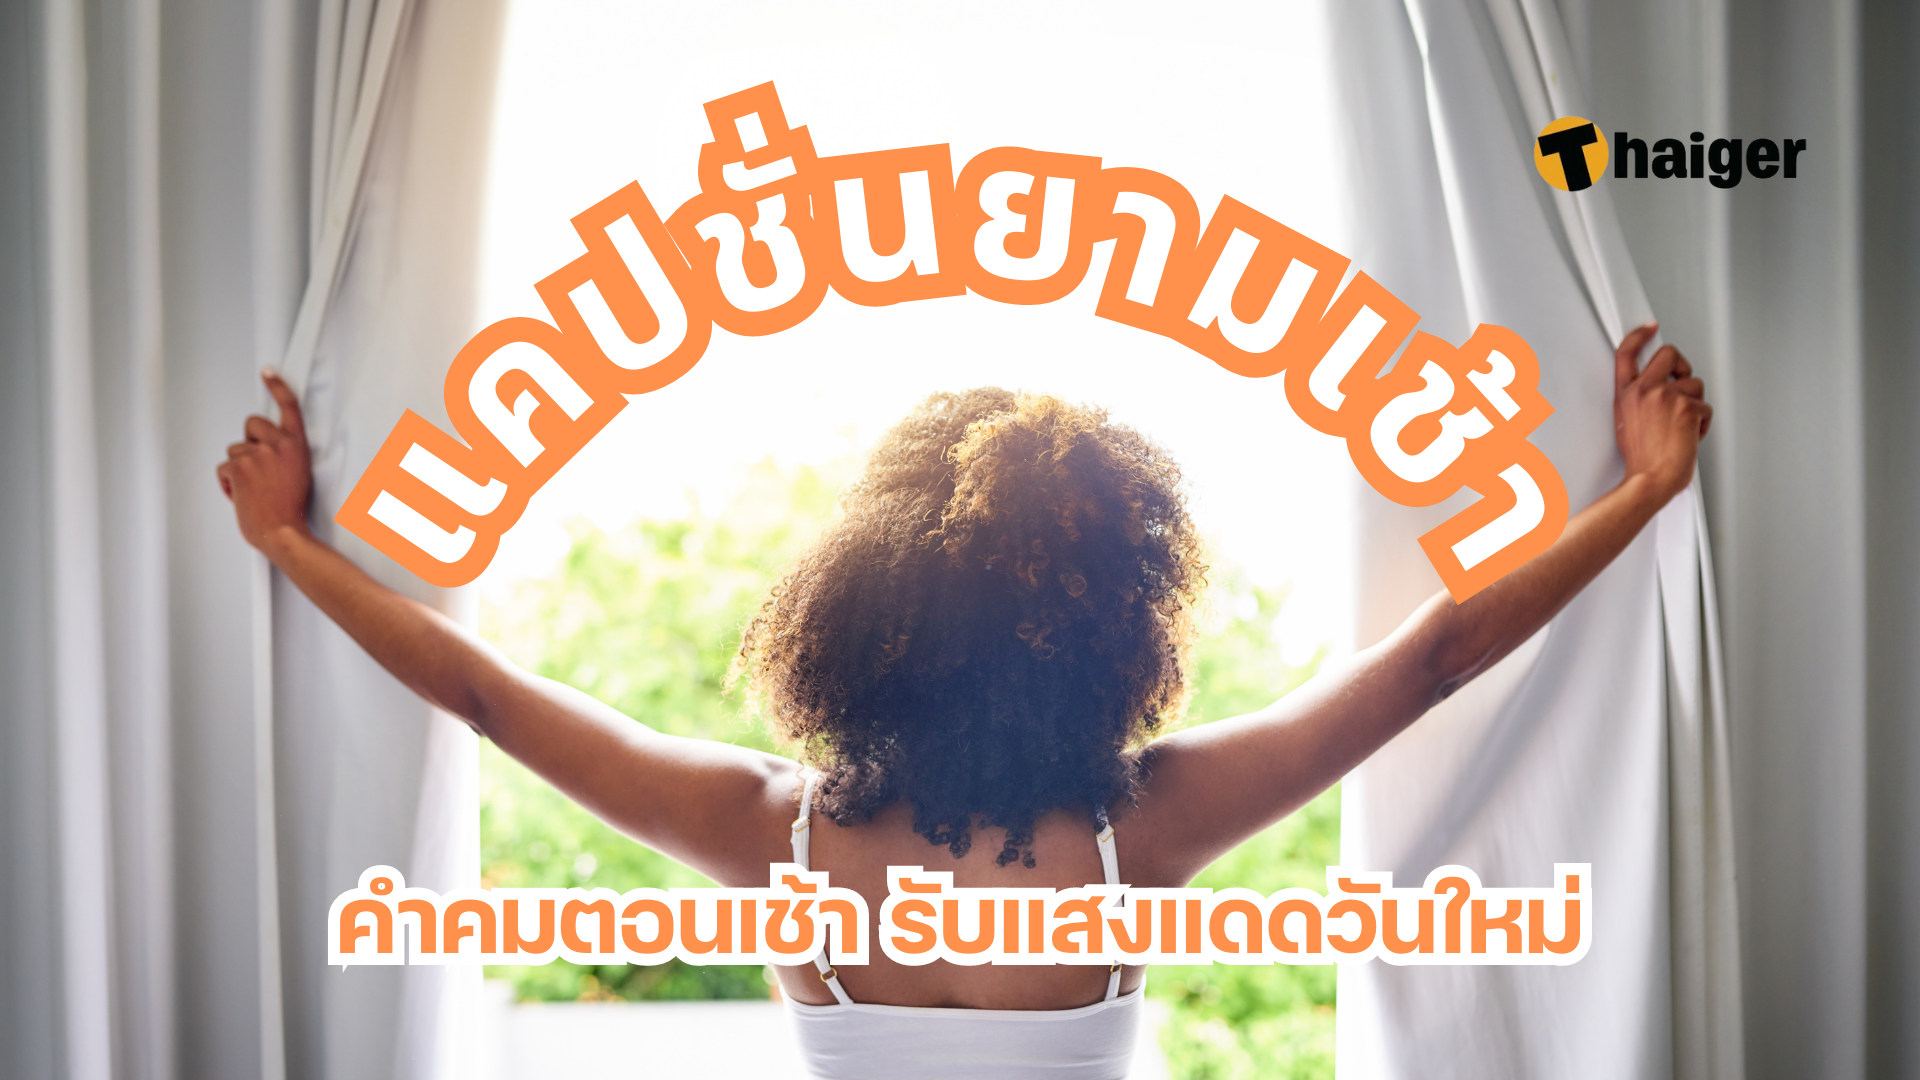 150 แคปชั่นยามเช้า ส่งต่ออารมณ์ดี ผ่านคำคมตอนเช้า รับแสงแดดวันใหม่ |  Thaiger ข่าวไทย